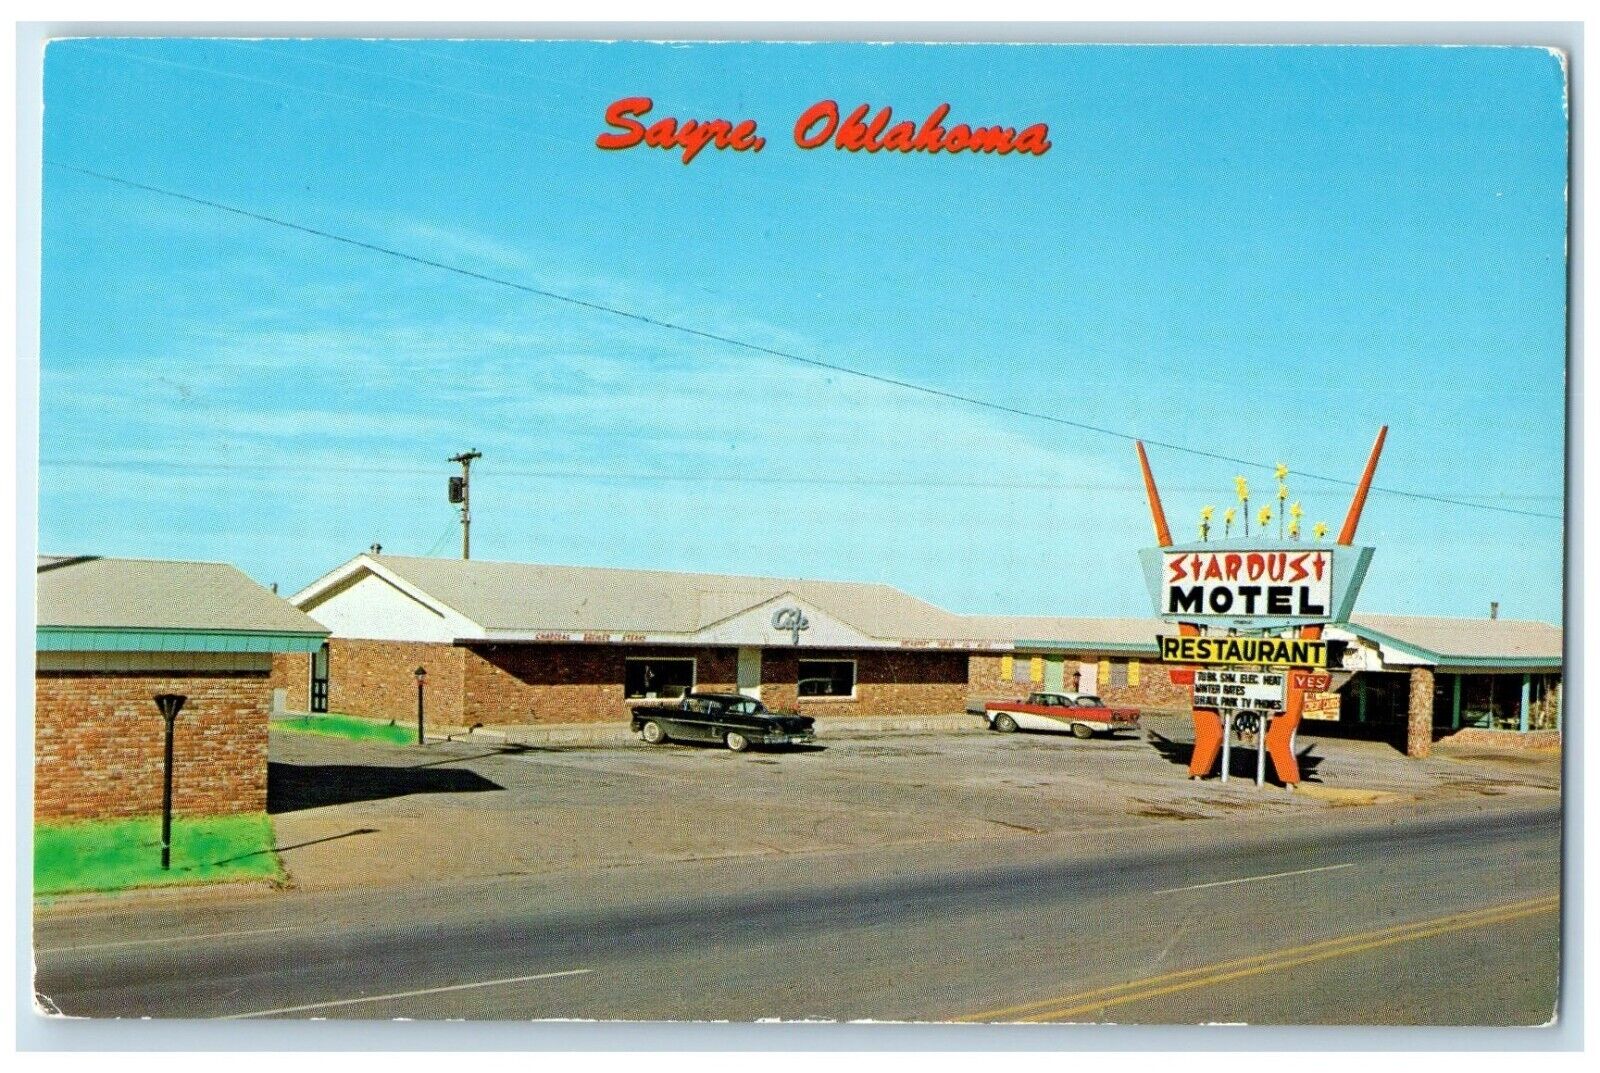 c1960's Stardust Motel Restaurant Roadside Sayre Oklahoma OK Vintage Postcard